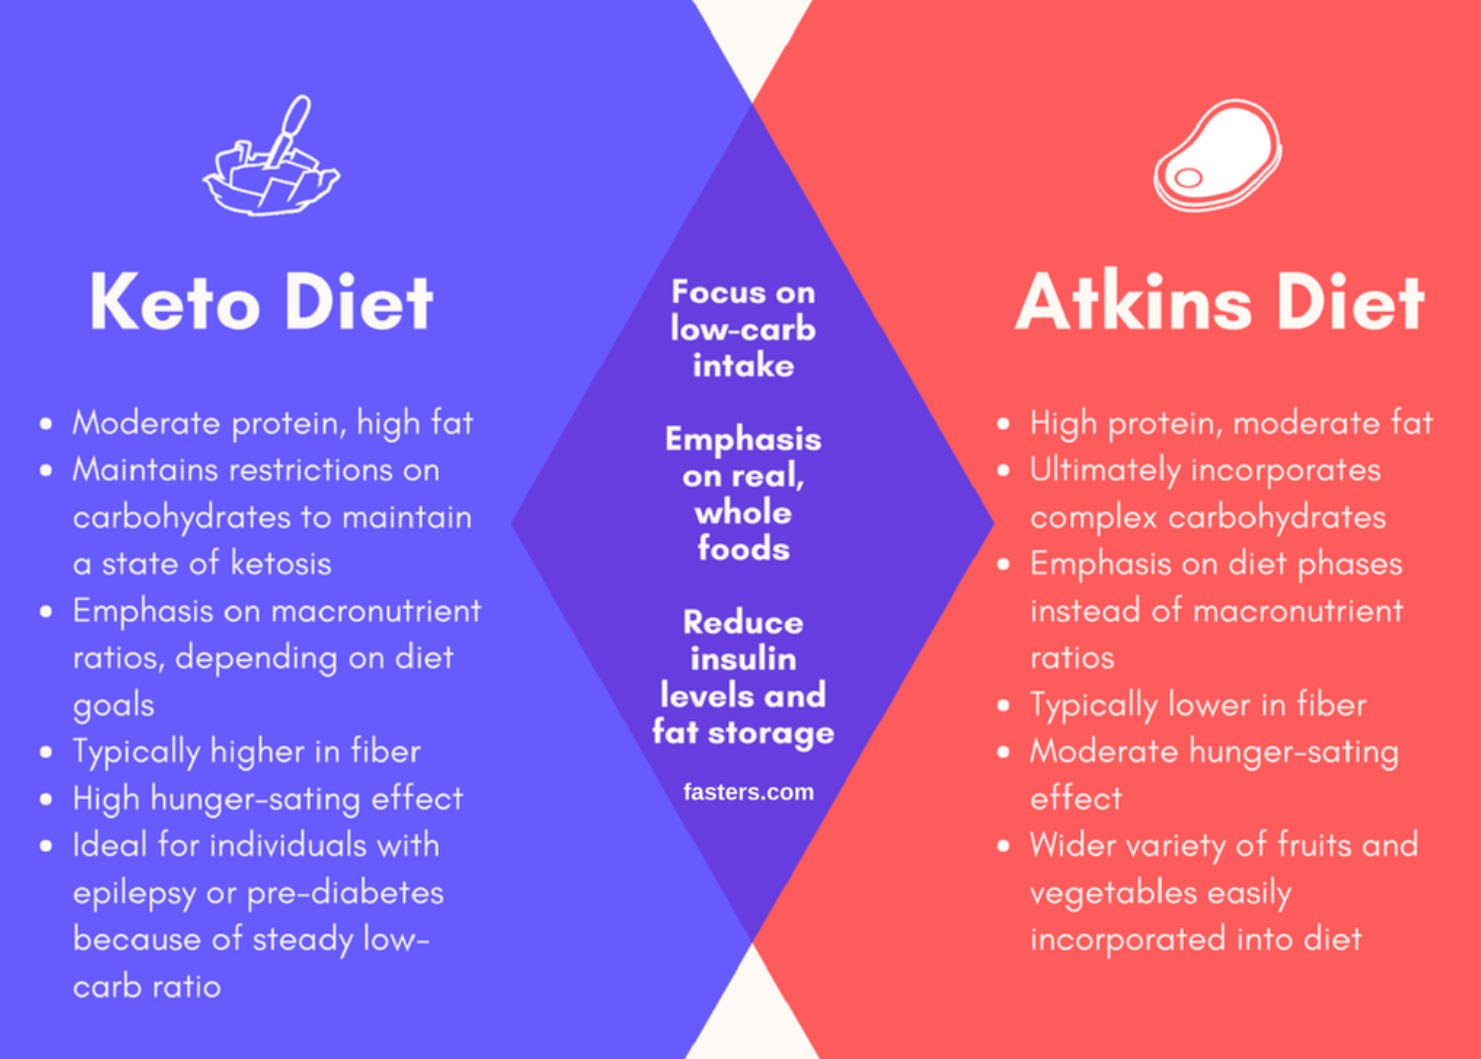 Keto diet versus Atkins